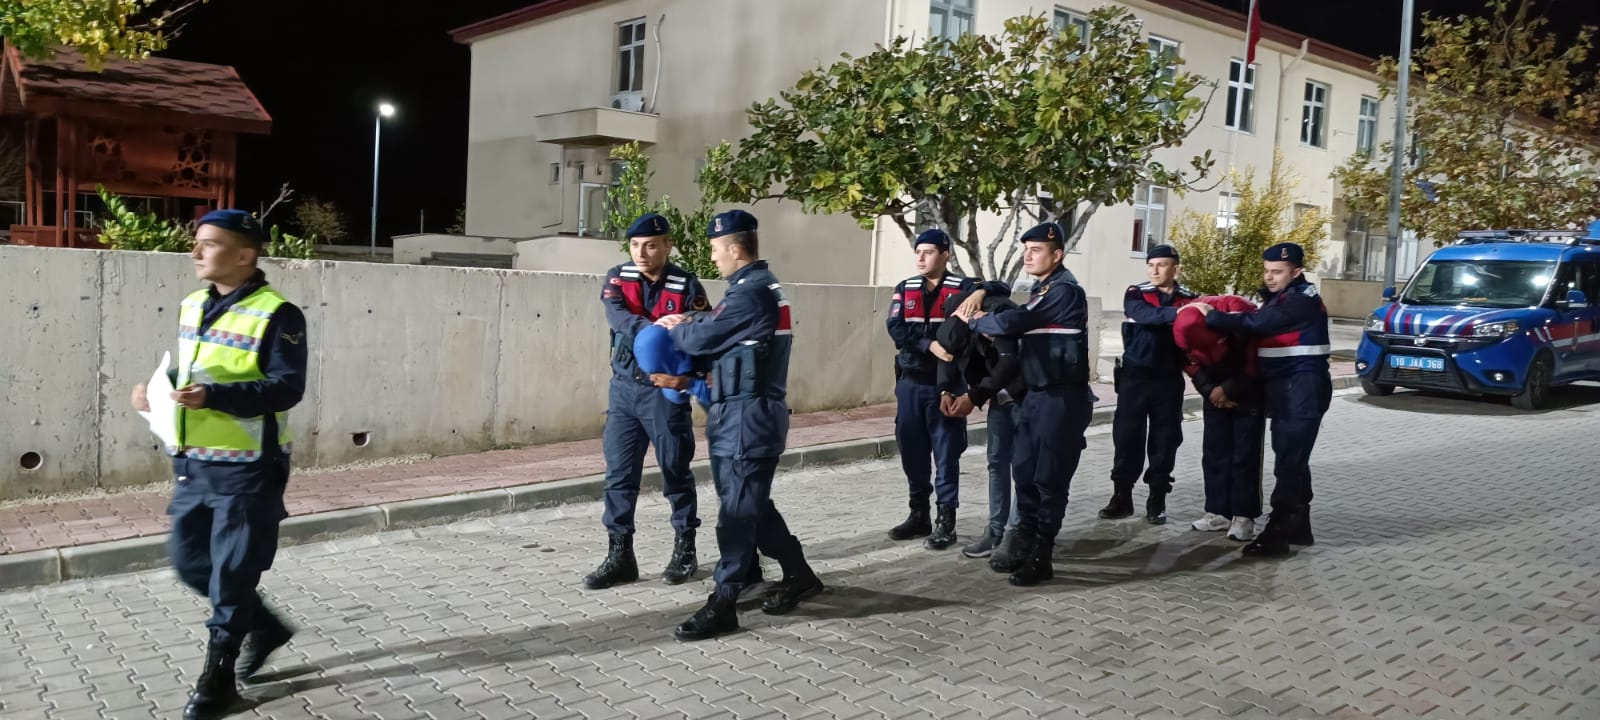 Zeytin Hırsızlıklarına Karşı Alınan Önlemler Sonuç Veriyor: 18 Kişiye Tutuklama